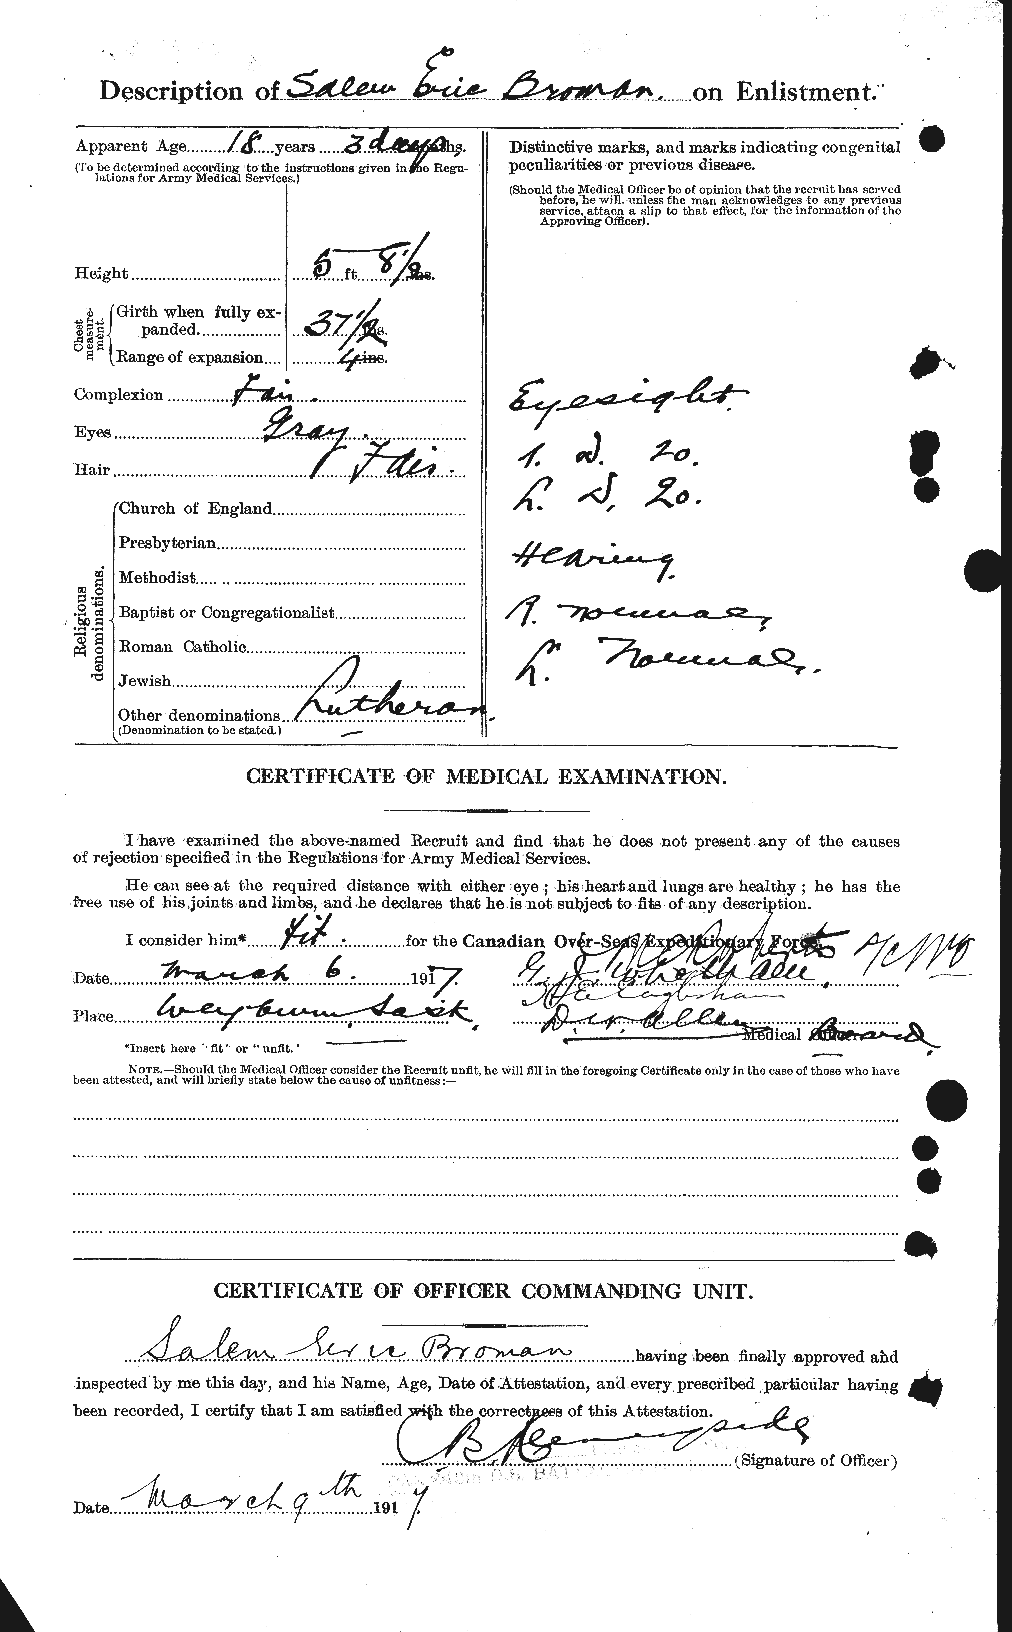 Dossiers du Personnel de la Première Guerre mondiale - CEC 262124b